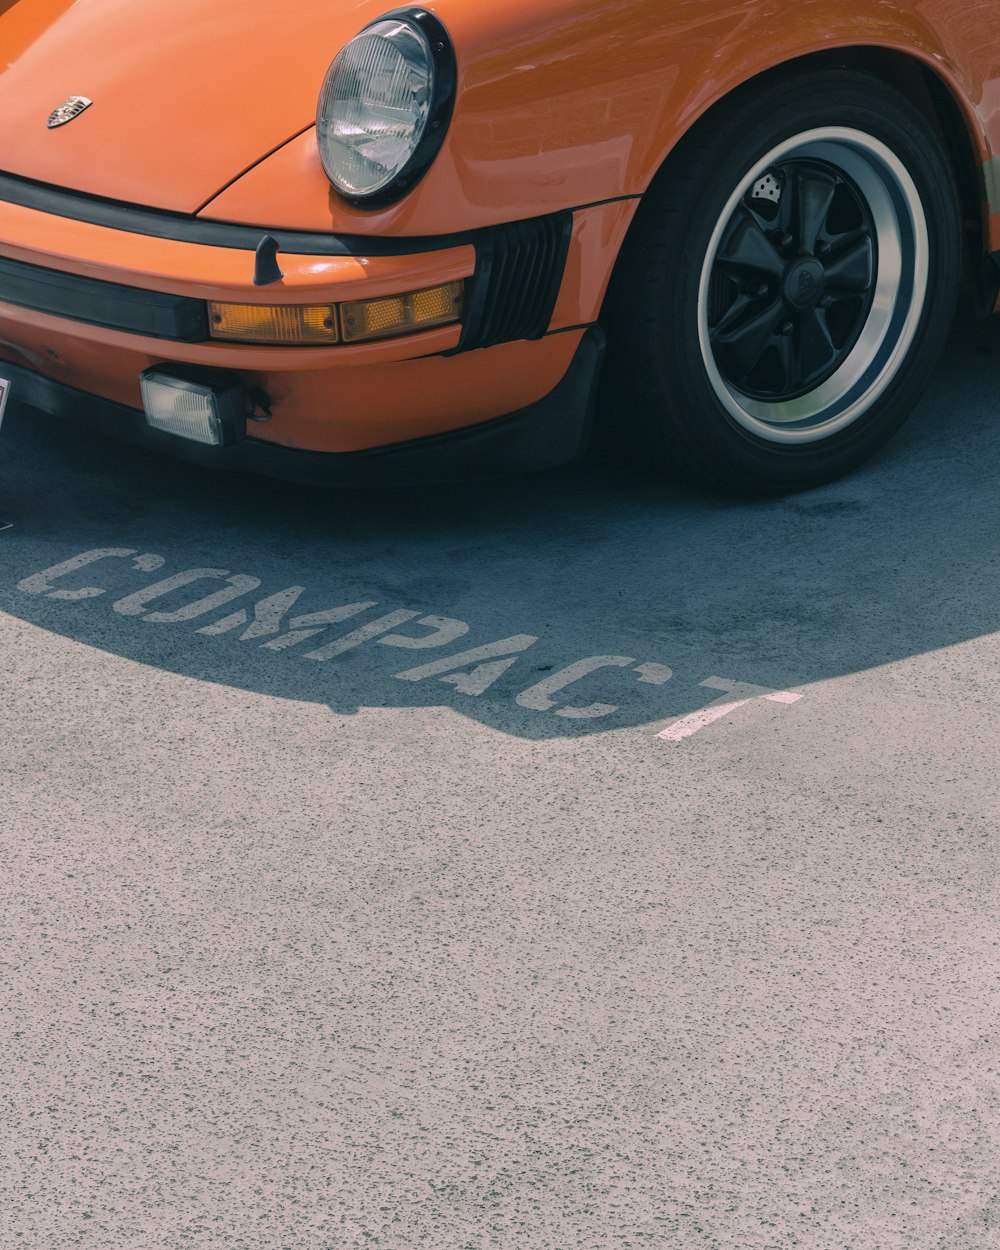 Véhicule Porsche orange sur le parking Compact